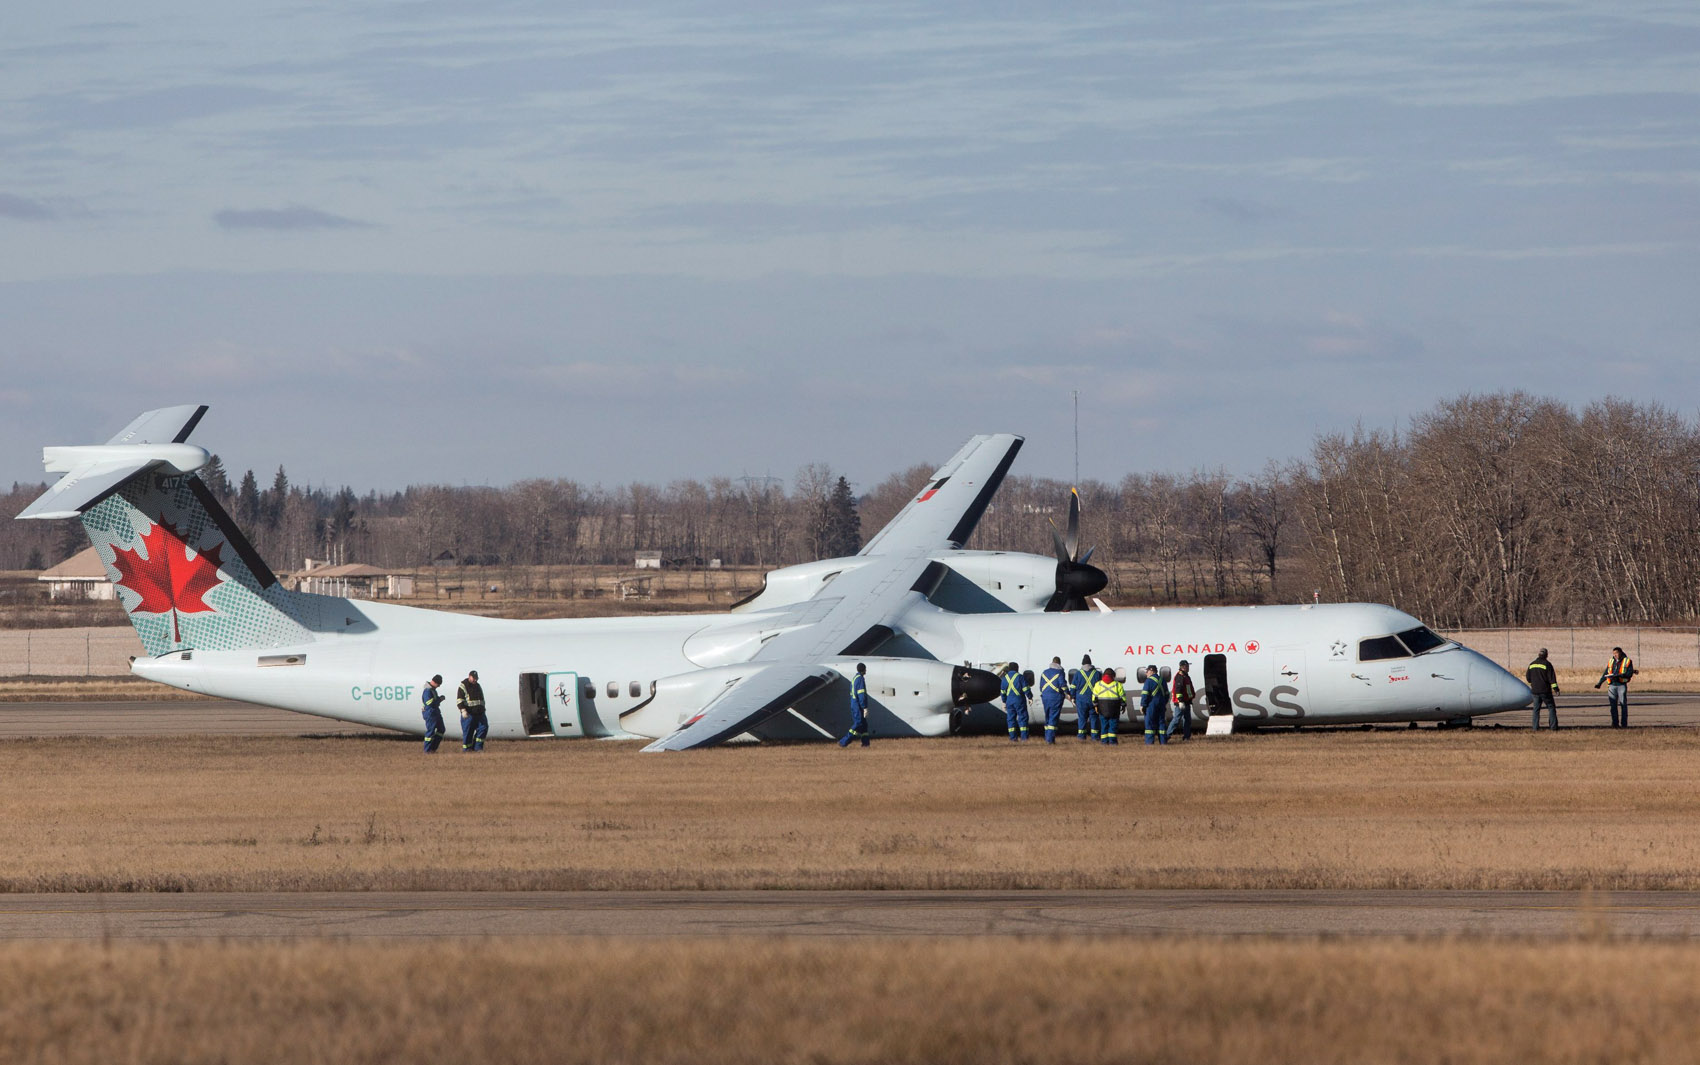 Investigadores analisam um avião de passageiros da Air Canada após pouso de emergência em Edmonton, no Canadá. O vôo 8481 saiu de Calgary, estava a caminho de Grande Prairie e transportava 71 passageiros, além de uma tripulação de quatro pessoas